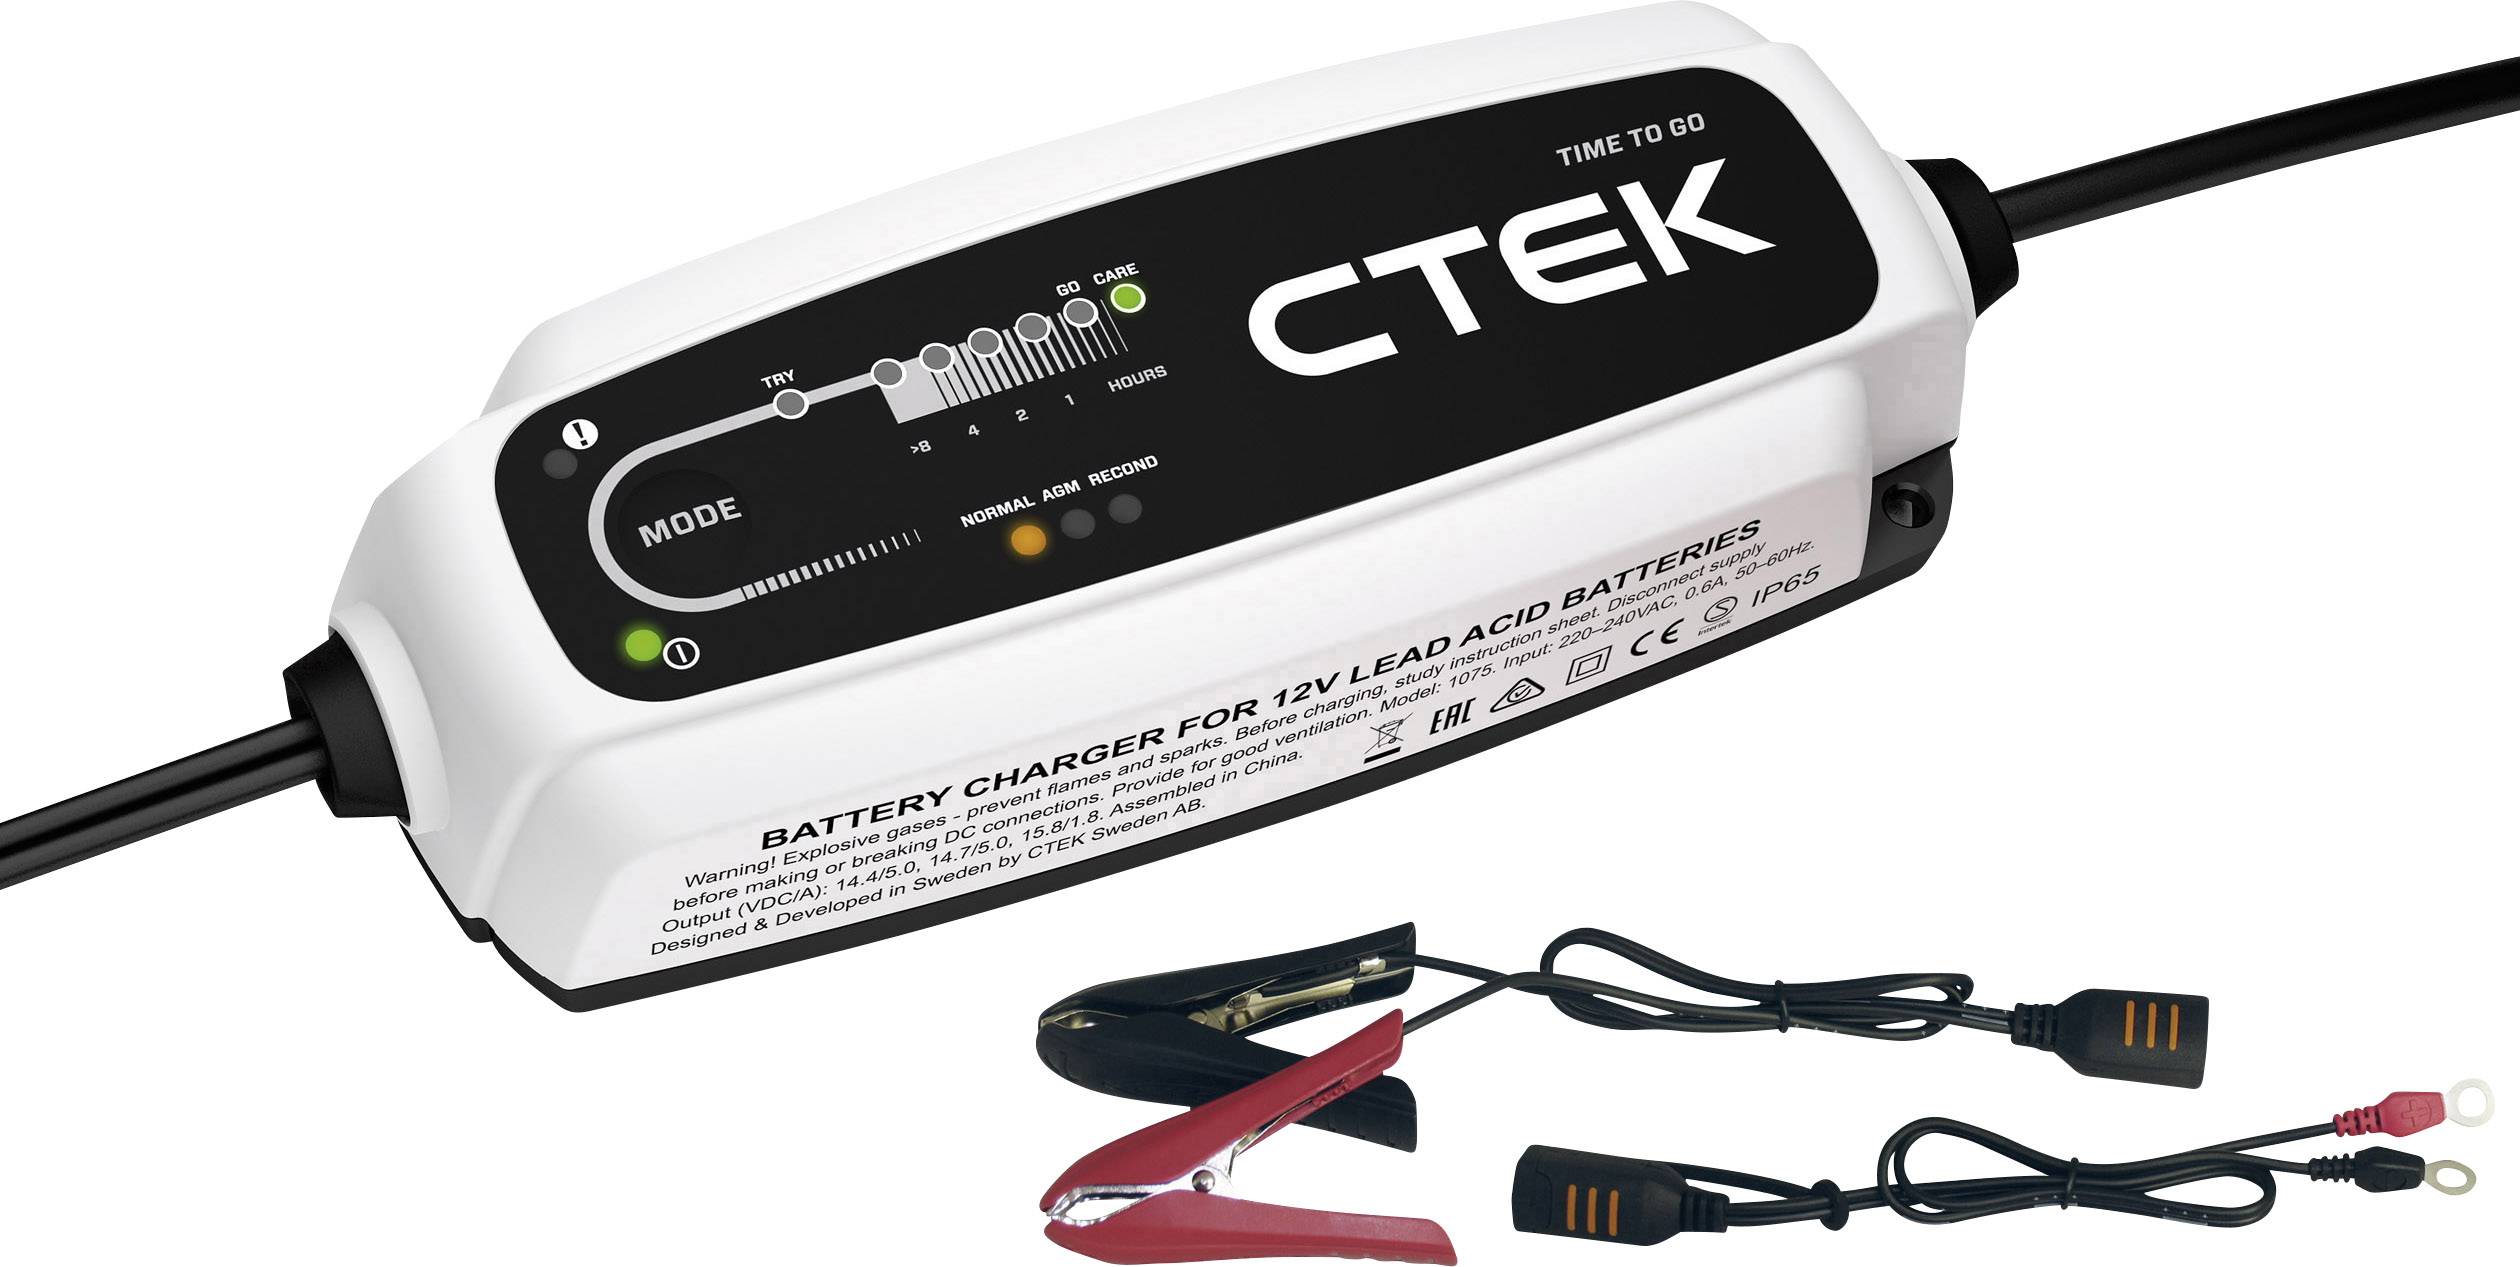 40-107 CTEK CT5 START/STOP Batterieladegerät tragbar